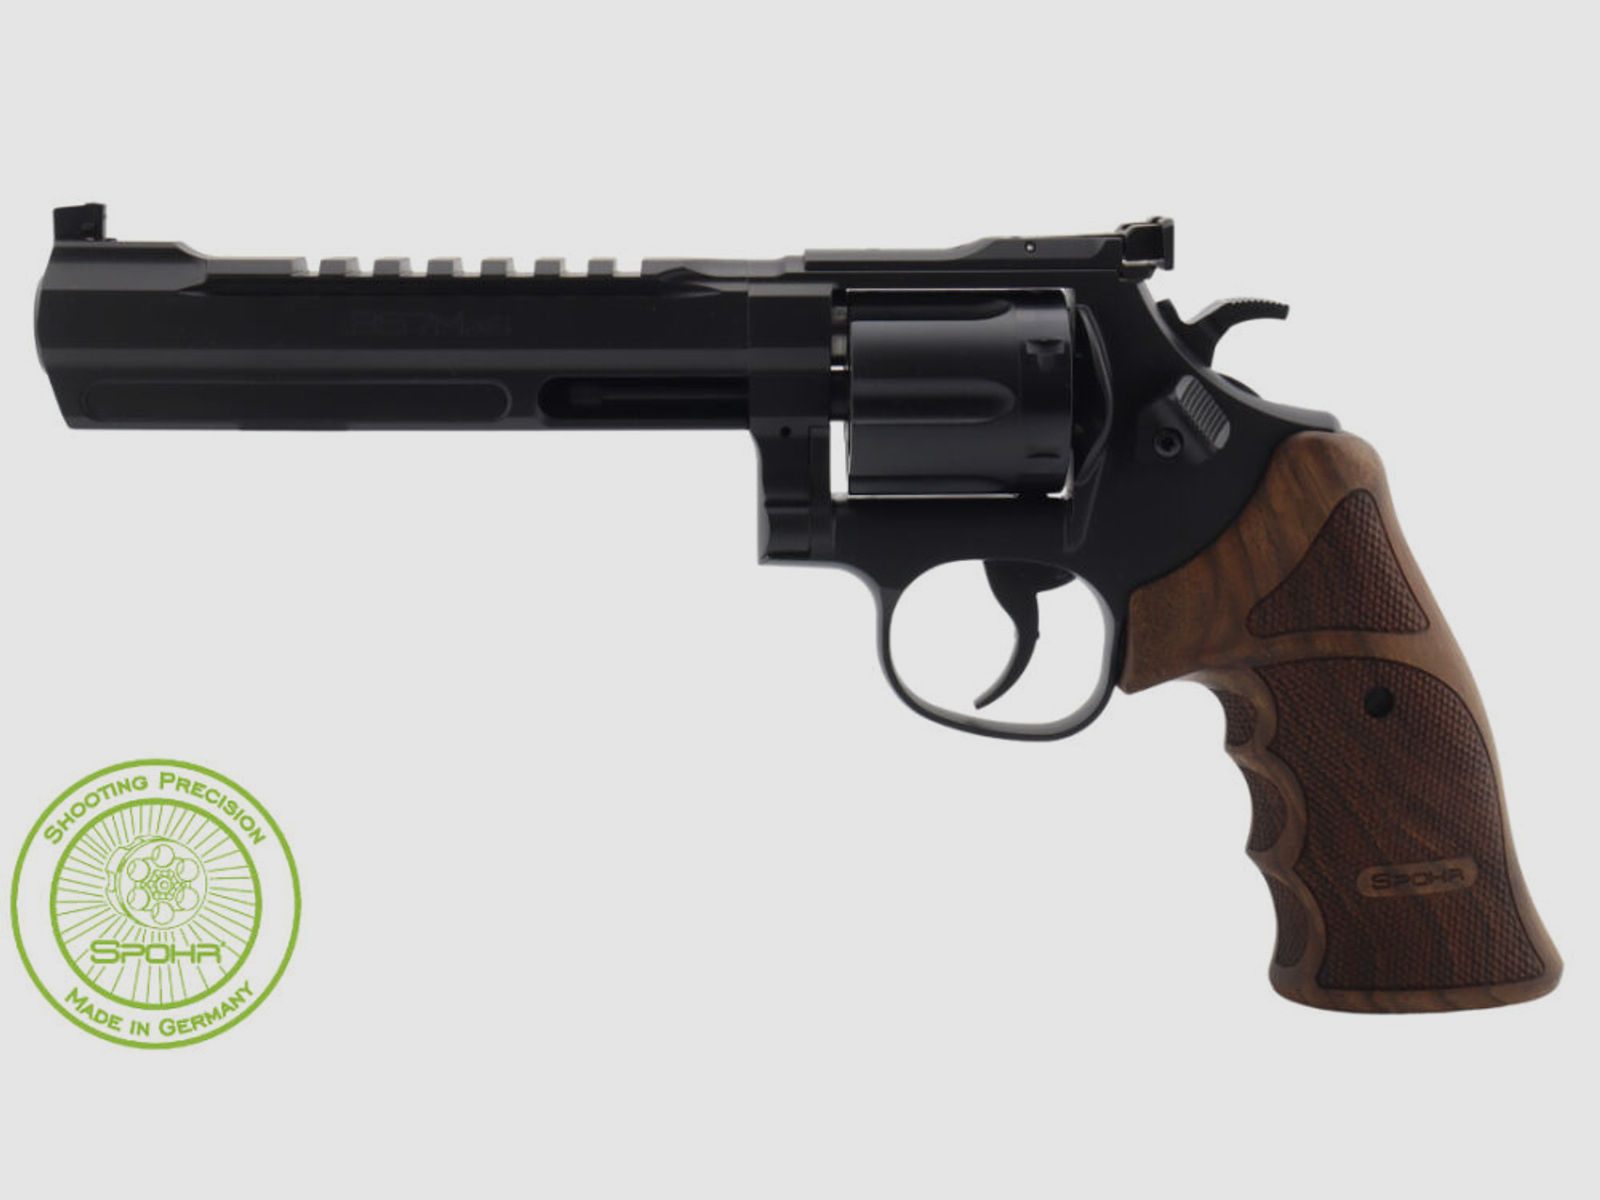 Spohr	 286 Competition Black Revolver mit Wechseltrommel 6 Zoll Revolver Sportrevolver schwarz